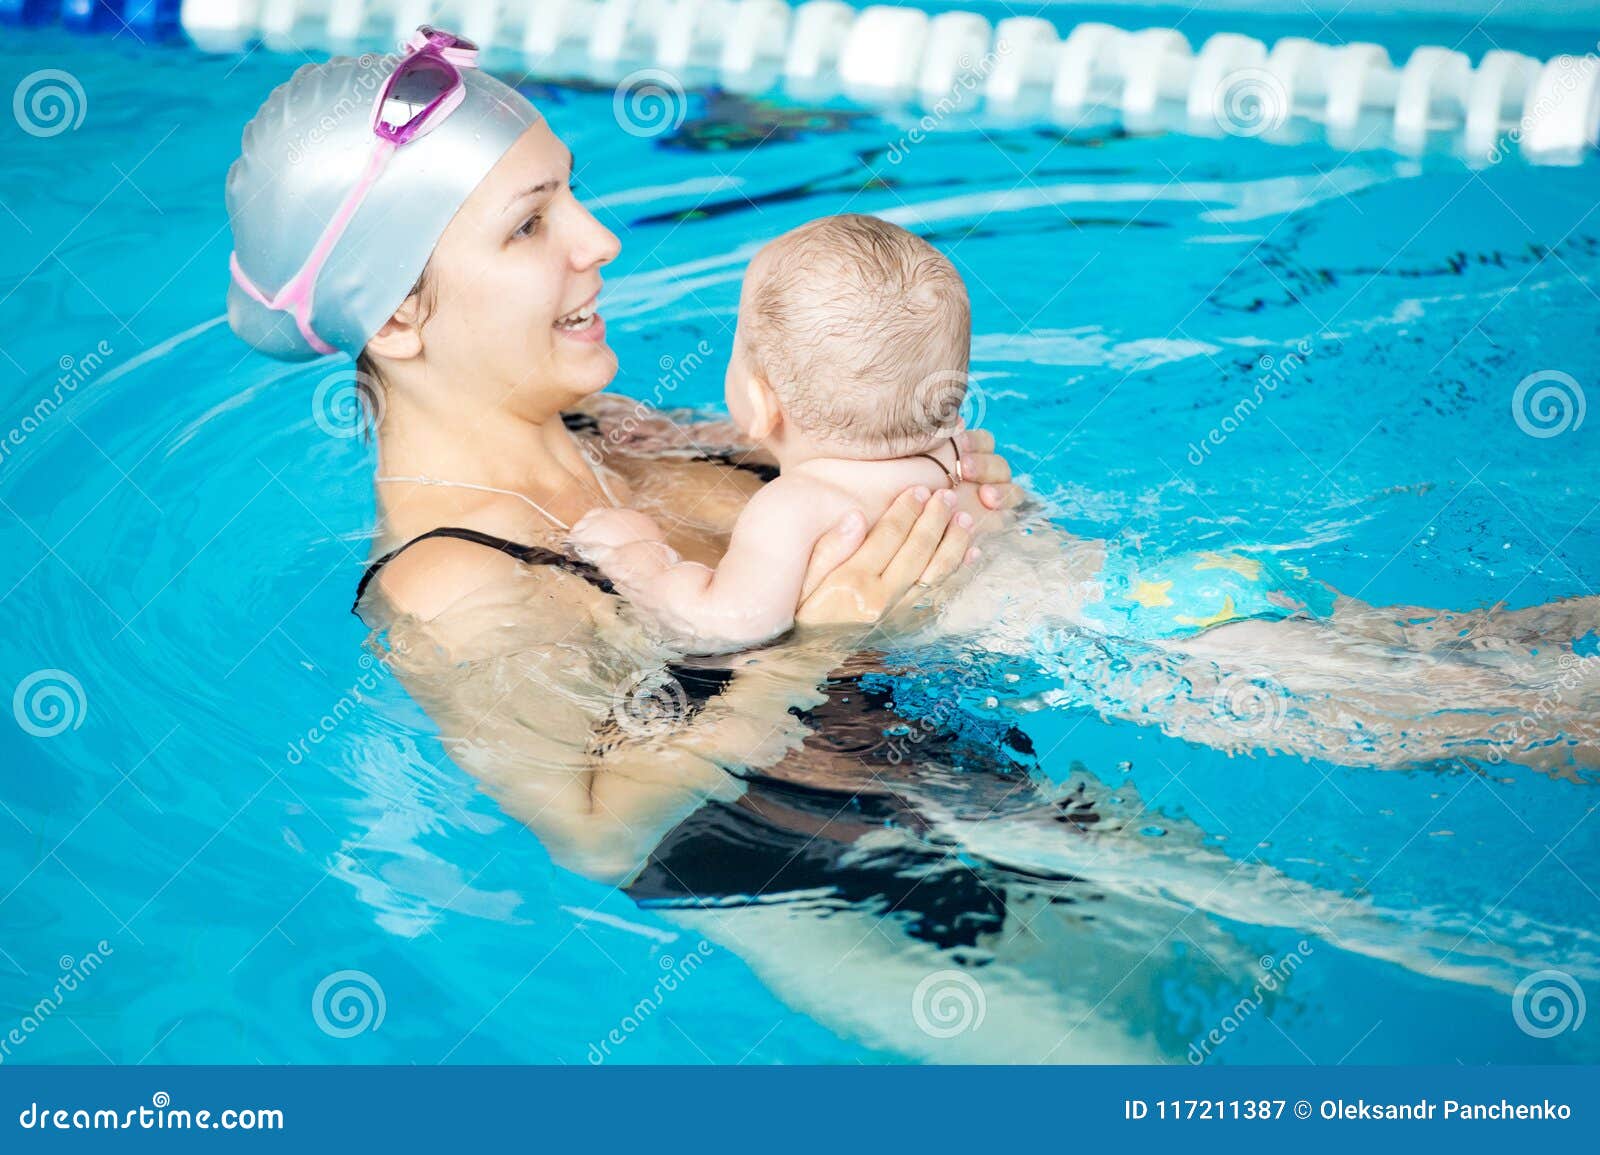 Мама я плыву москва. Девушка с сыном в бассейне. Молодые мамы в бассейне. Мама плавает в бассейне. Семья в бассейне с сыном.